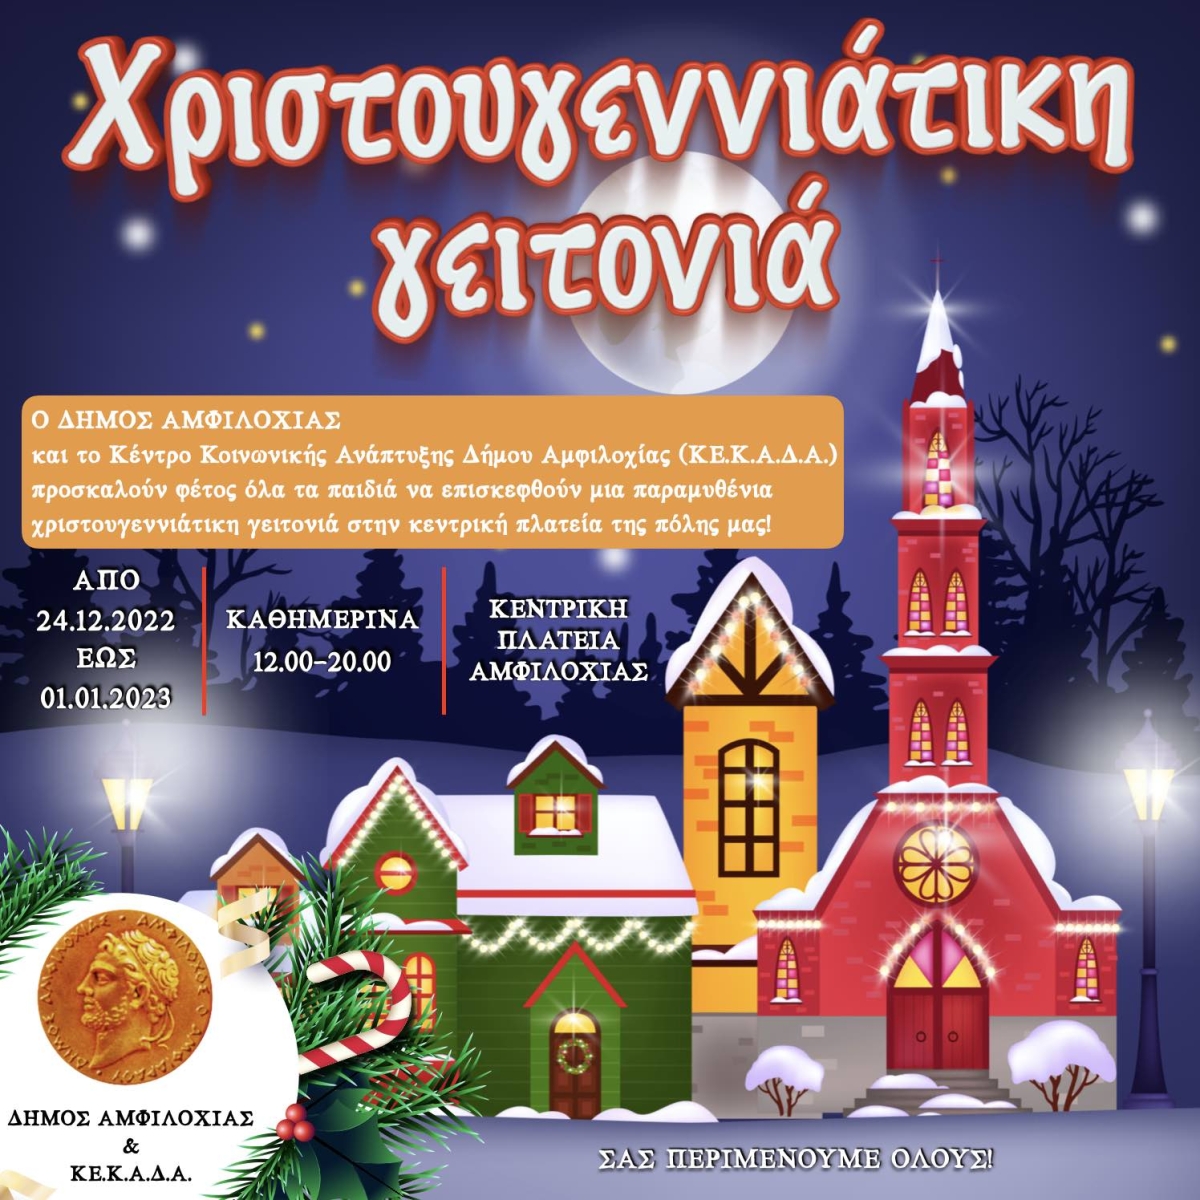 Εορταστικές εκδηλώσεις του Δήμου Αμφιλοχίας Χριστούγεννα 2022 - Πρωτοχρονιά 2023 (Παρ 9/12/2022 - Κυρ 1/1/2023)